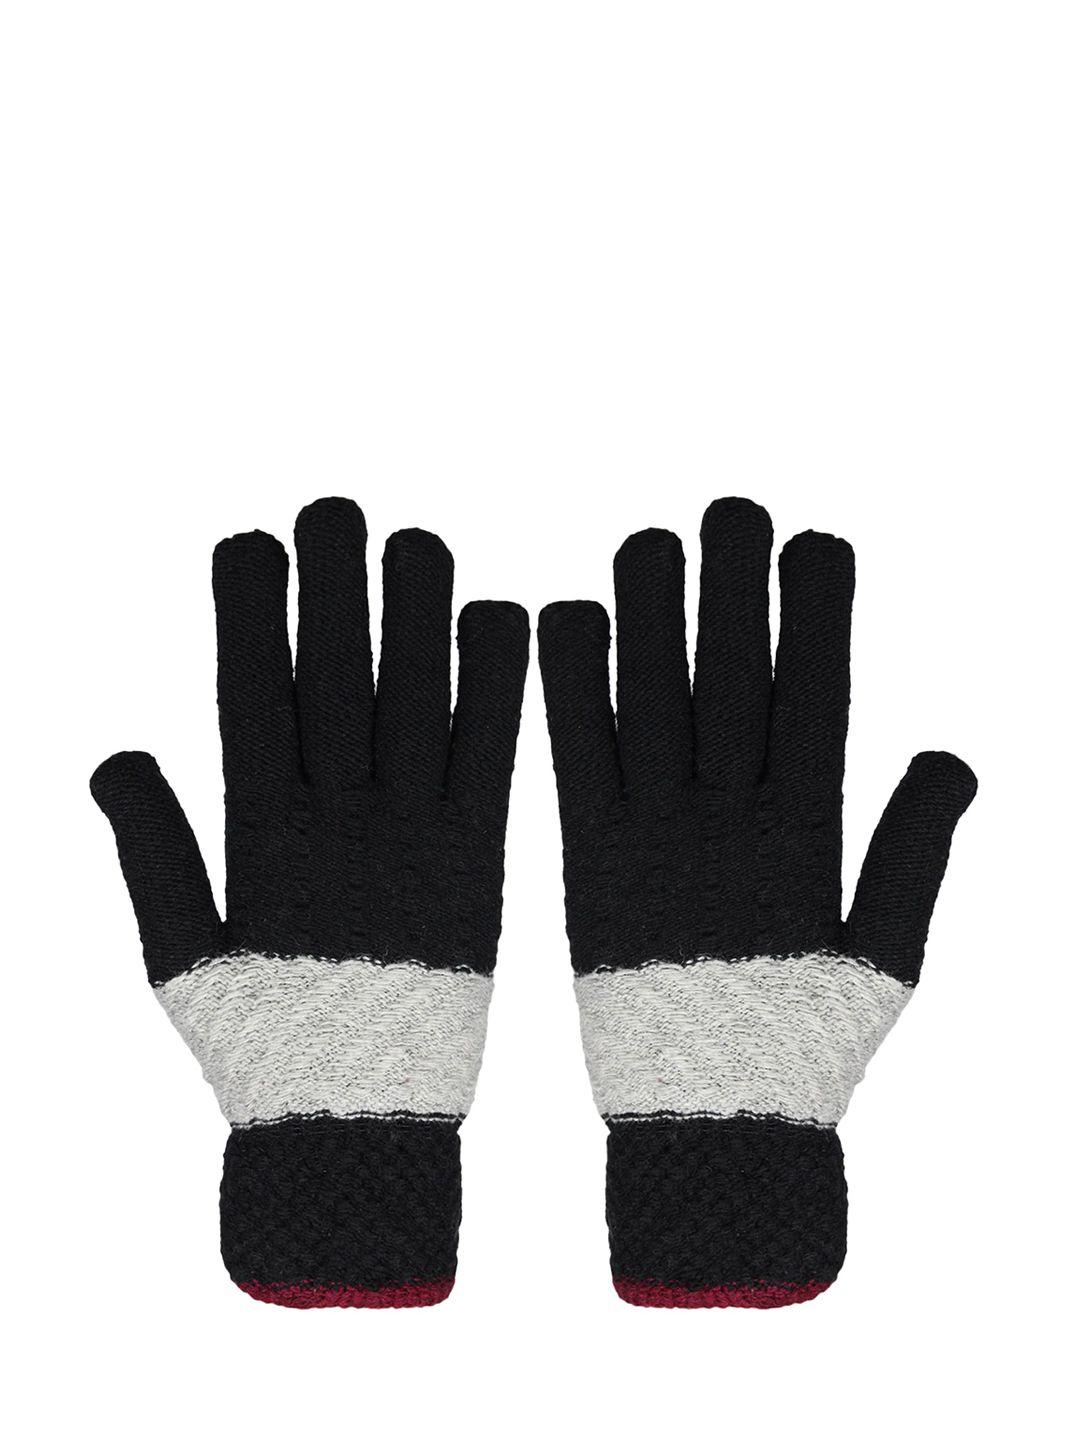 baesd unisex striped full finger woolen winter gloves